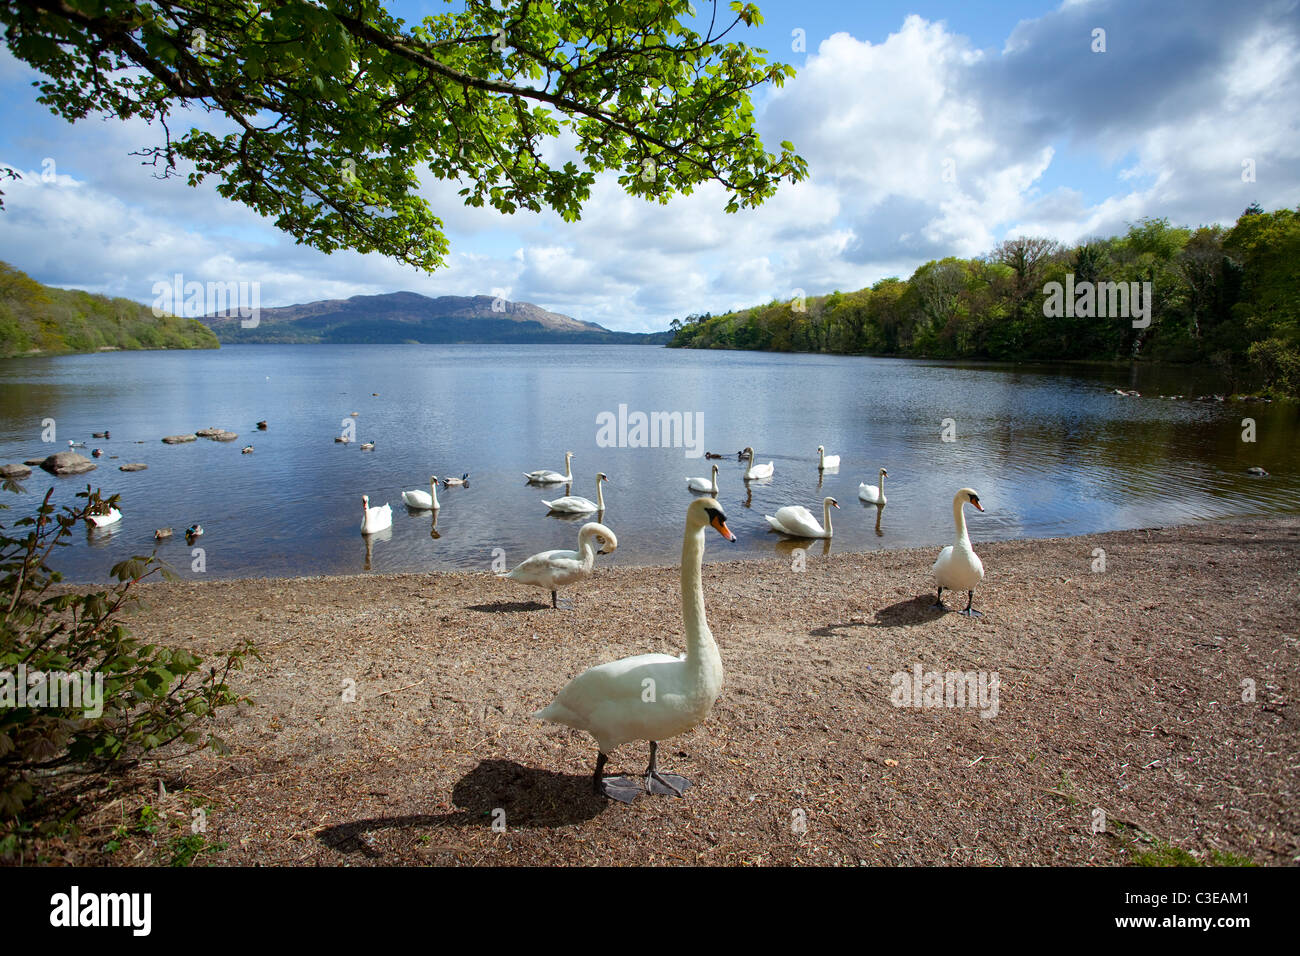 Swans on the shore of Lough Gill, Hazelwood, County Sligo, Ireland. Stock Photo